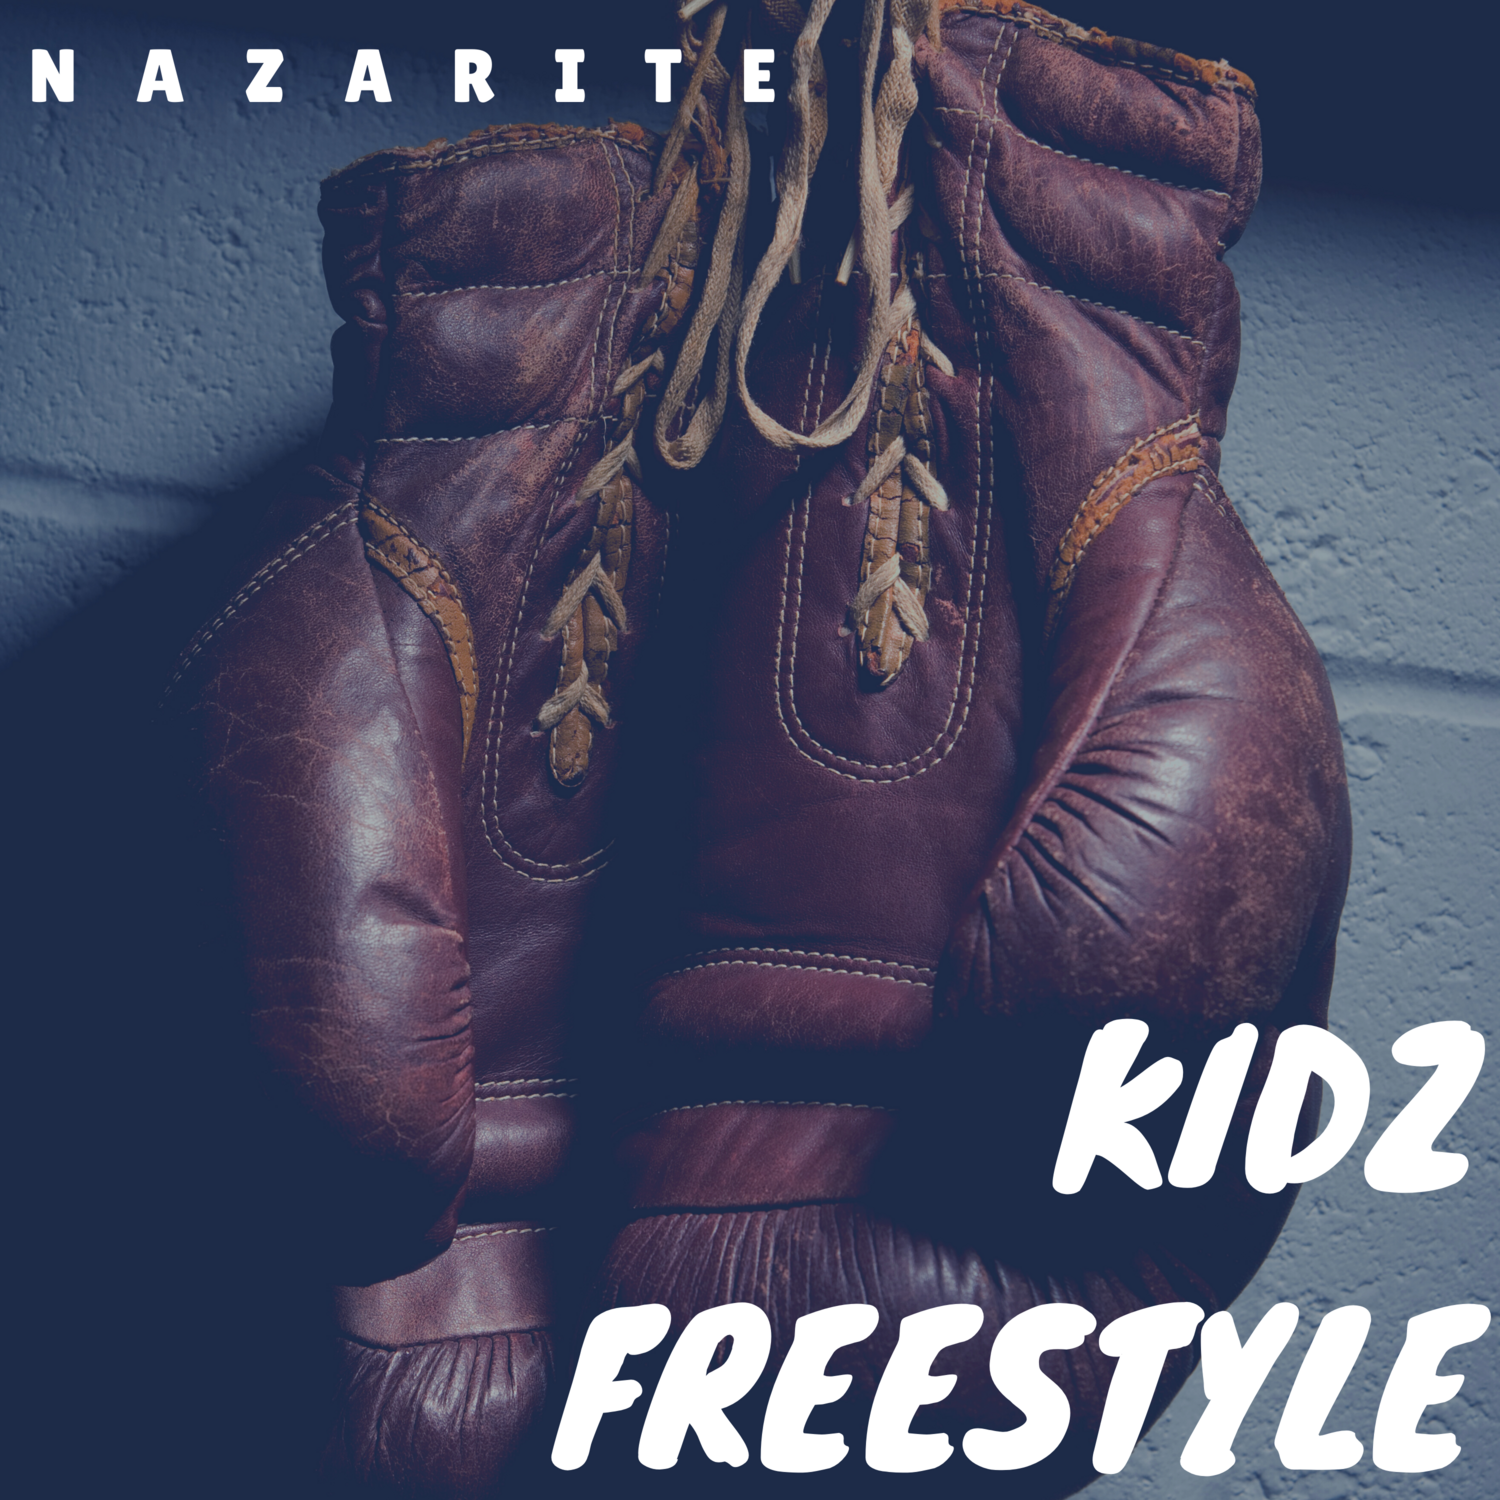 Nazarite "Kidz Freestyle"